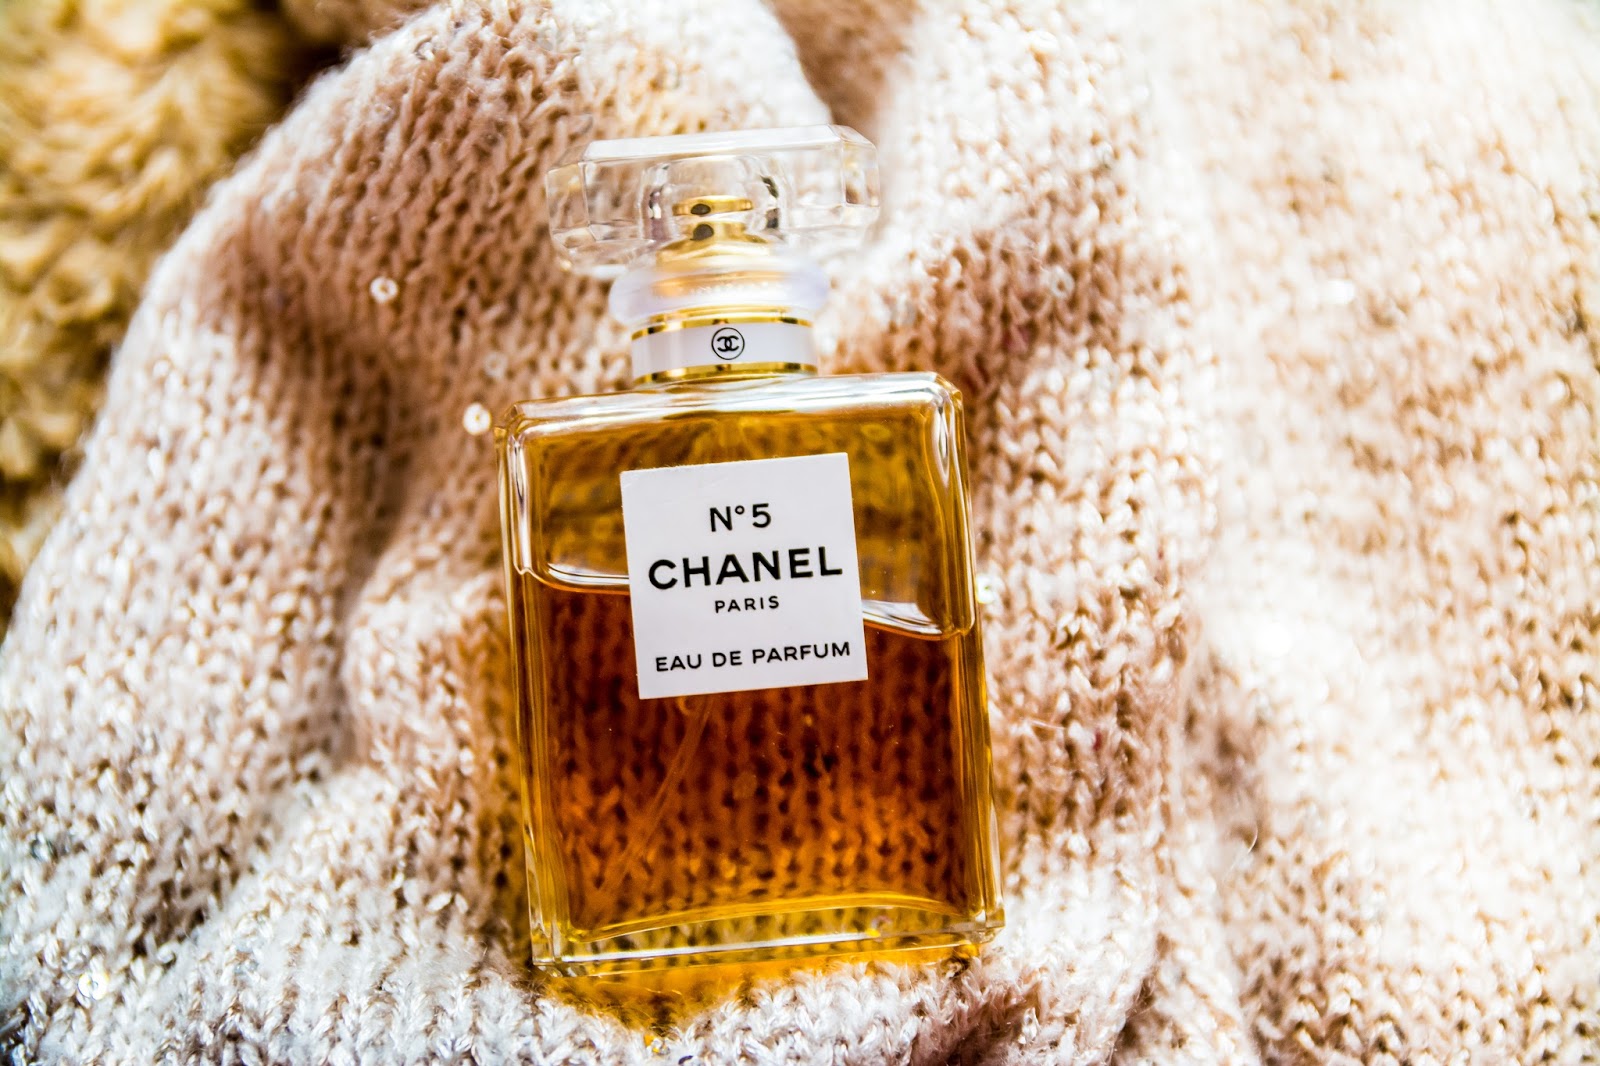 ZAPACHNIDŁO - o perfumach, recenzje perfum: Chanel No. 5